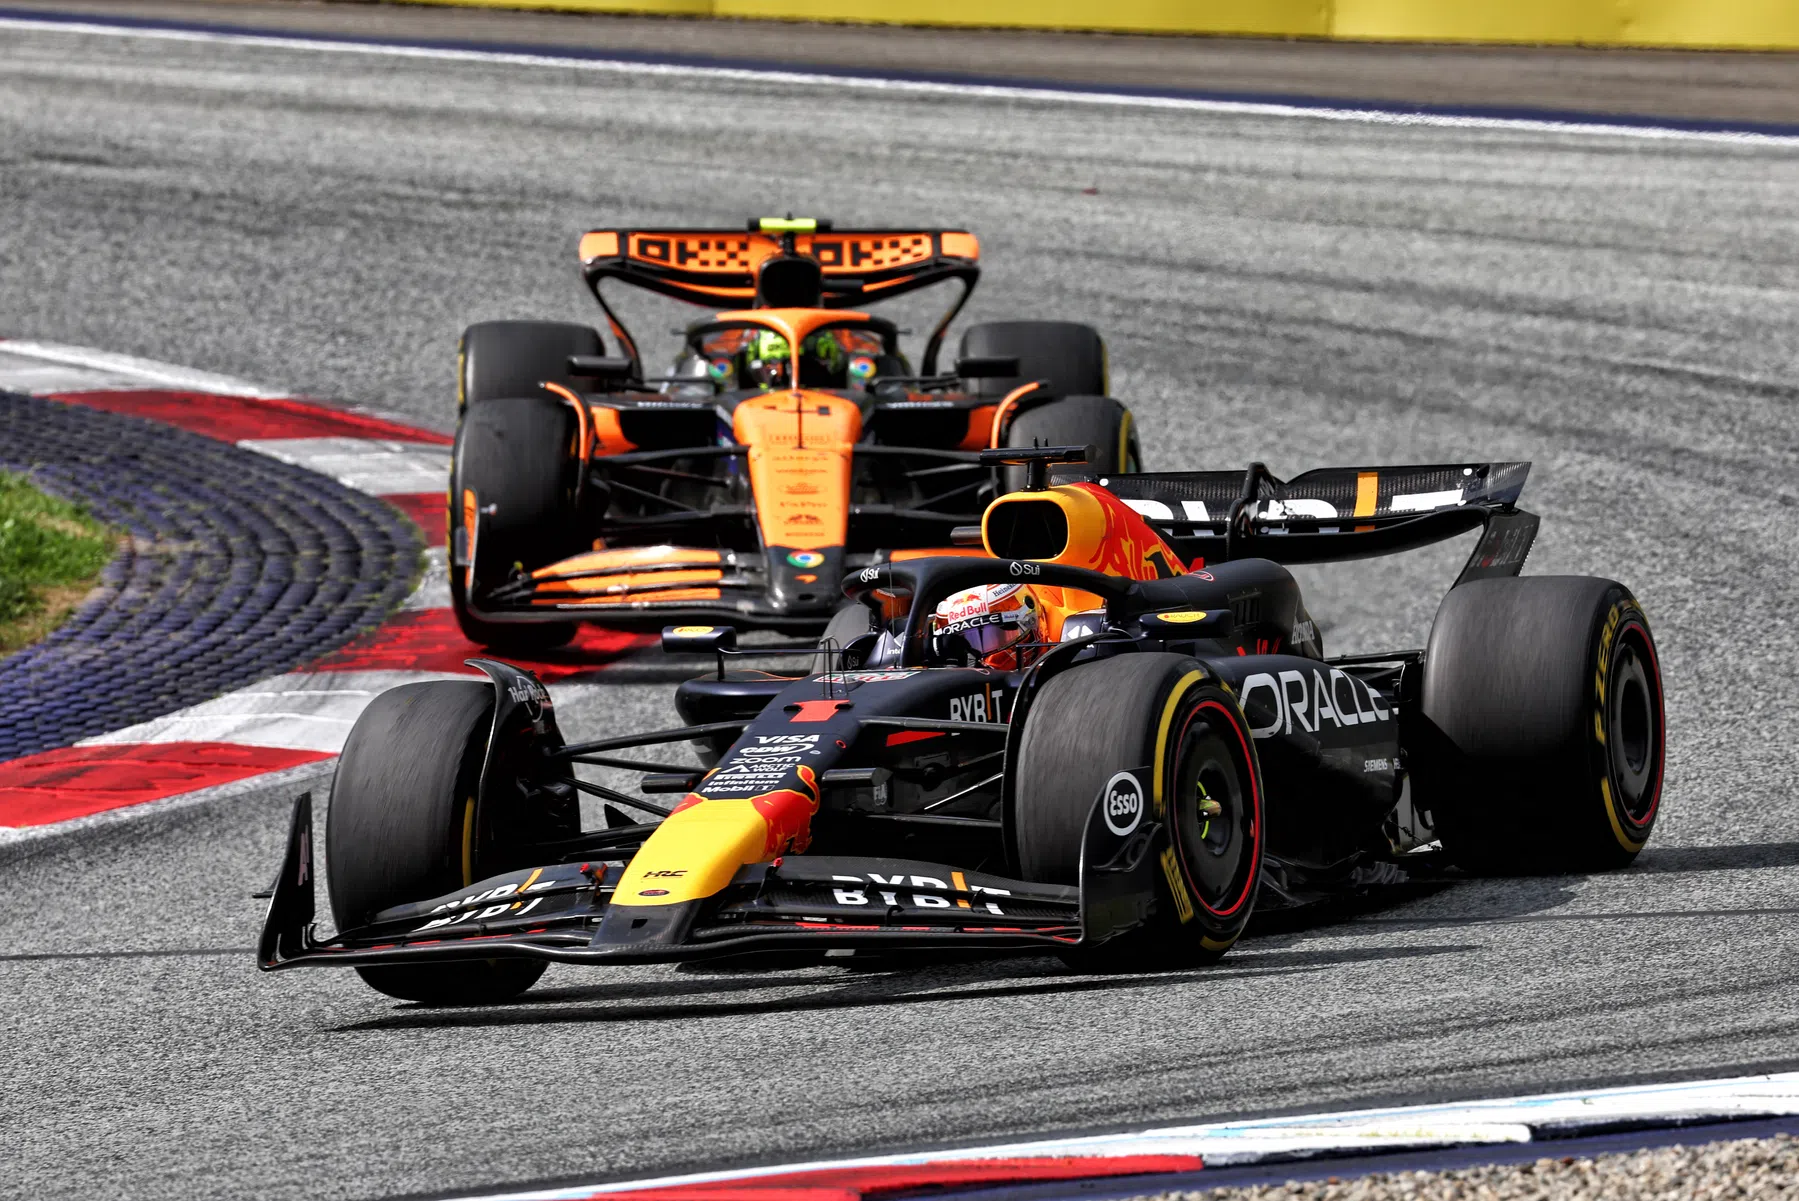 McLaren partage un message remarquable sur les médias sociaux à propos de Red Bull